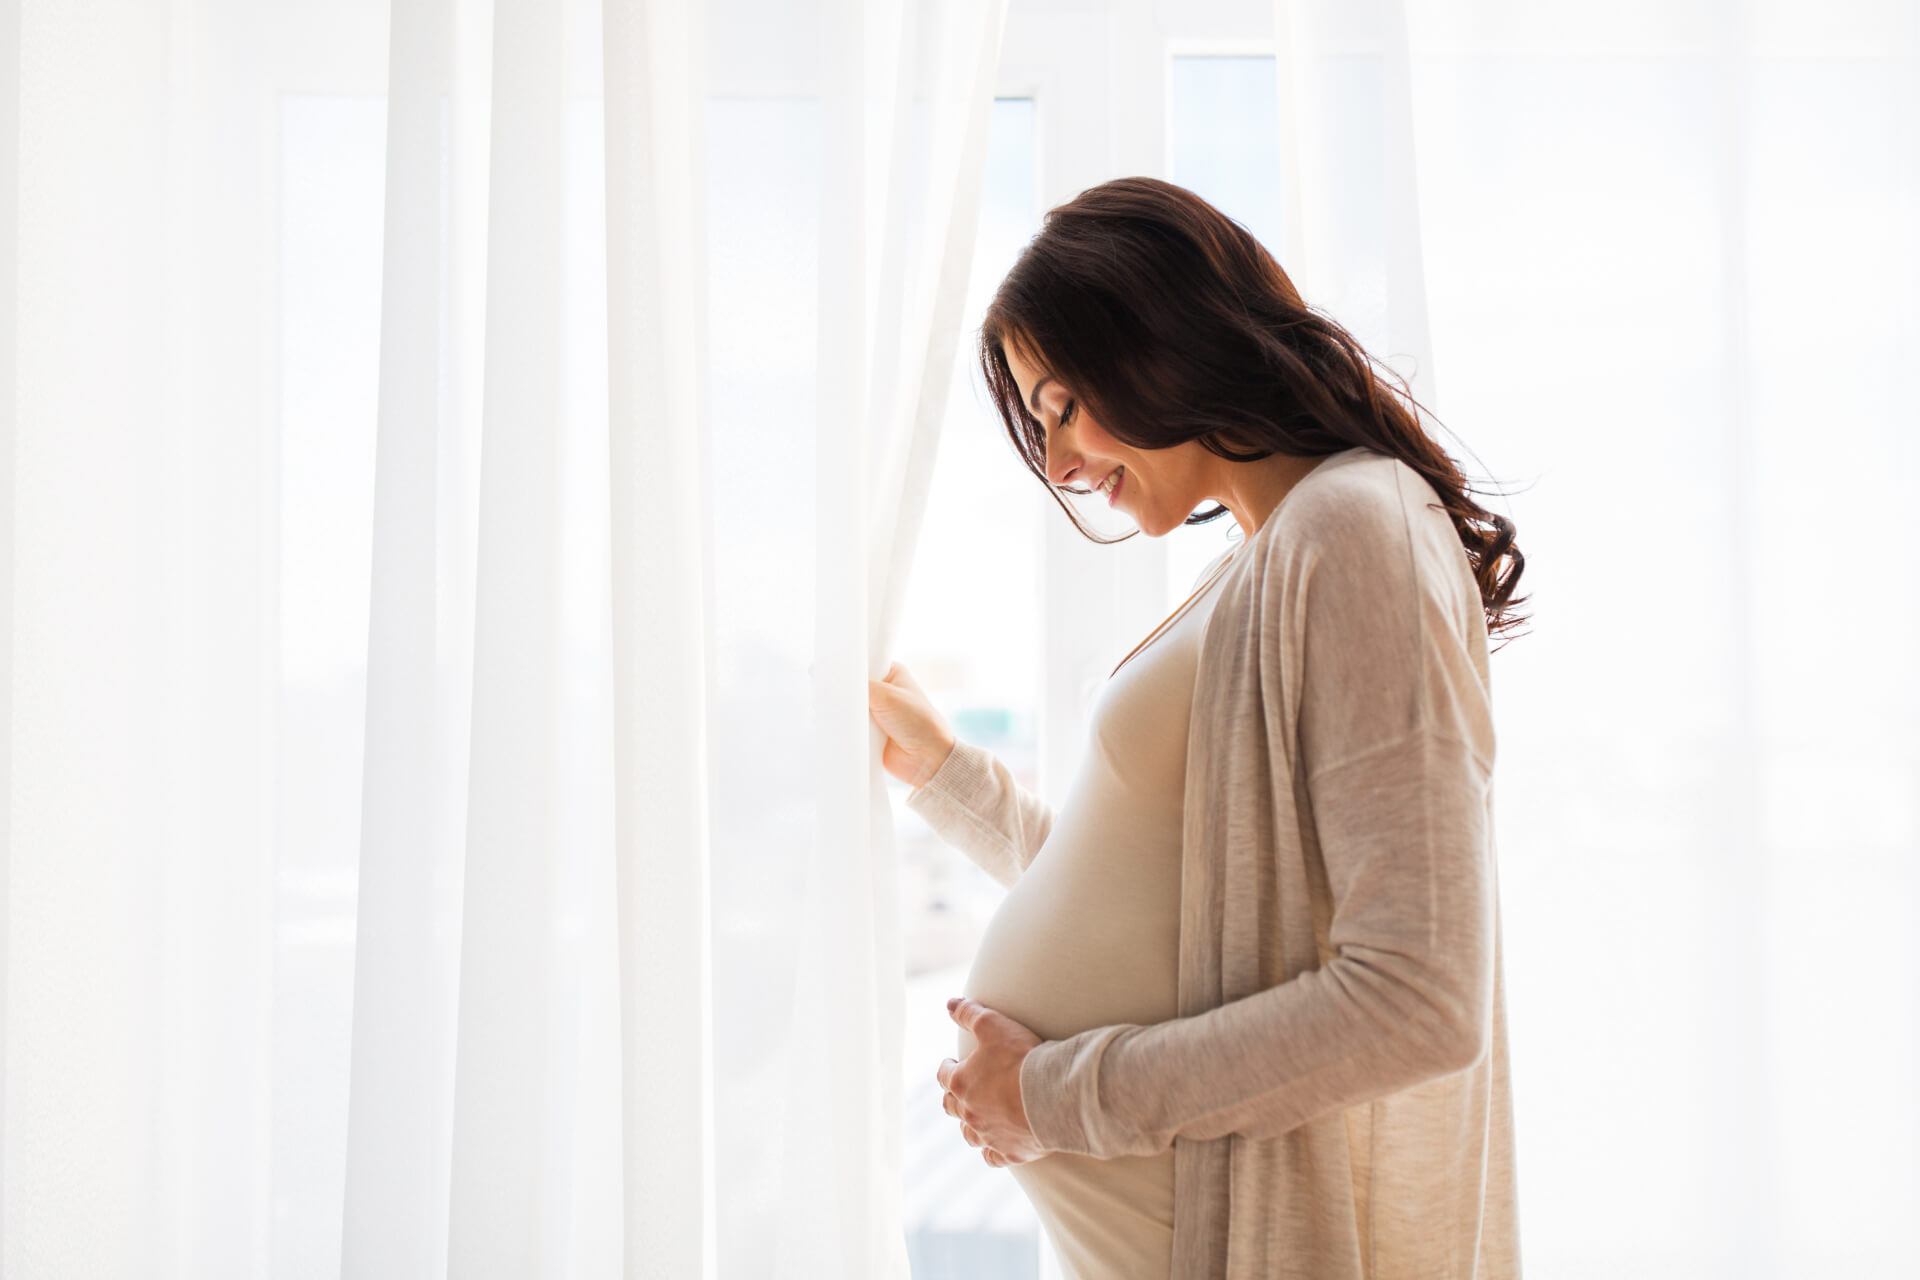 Tabela gestacional: como calcular o tempo de gravidez corretamente?